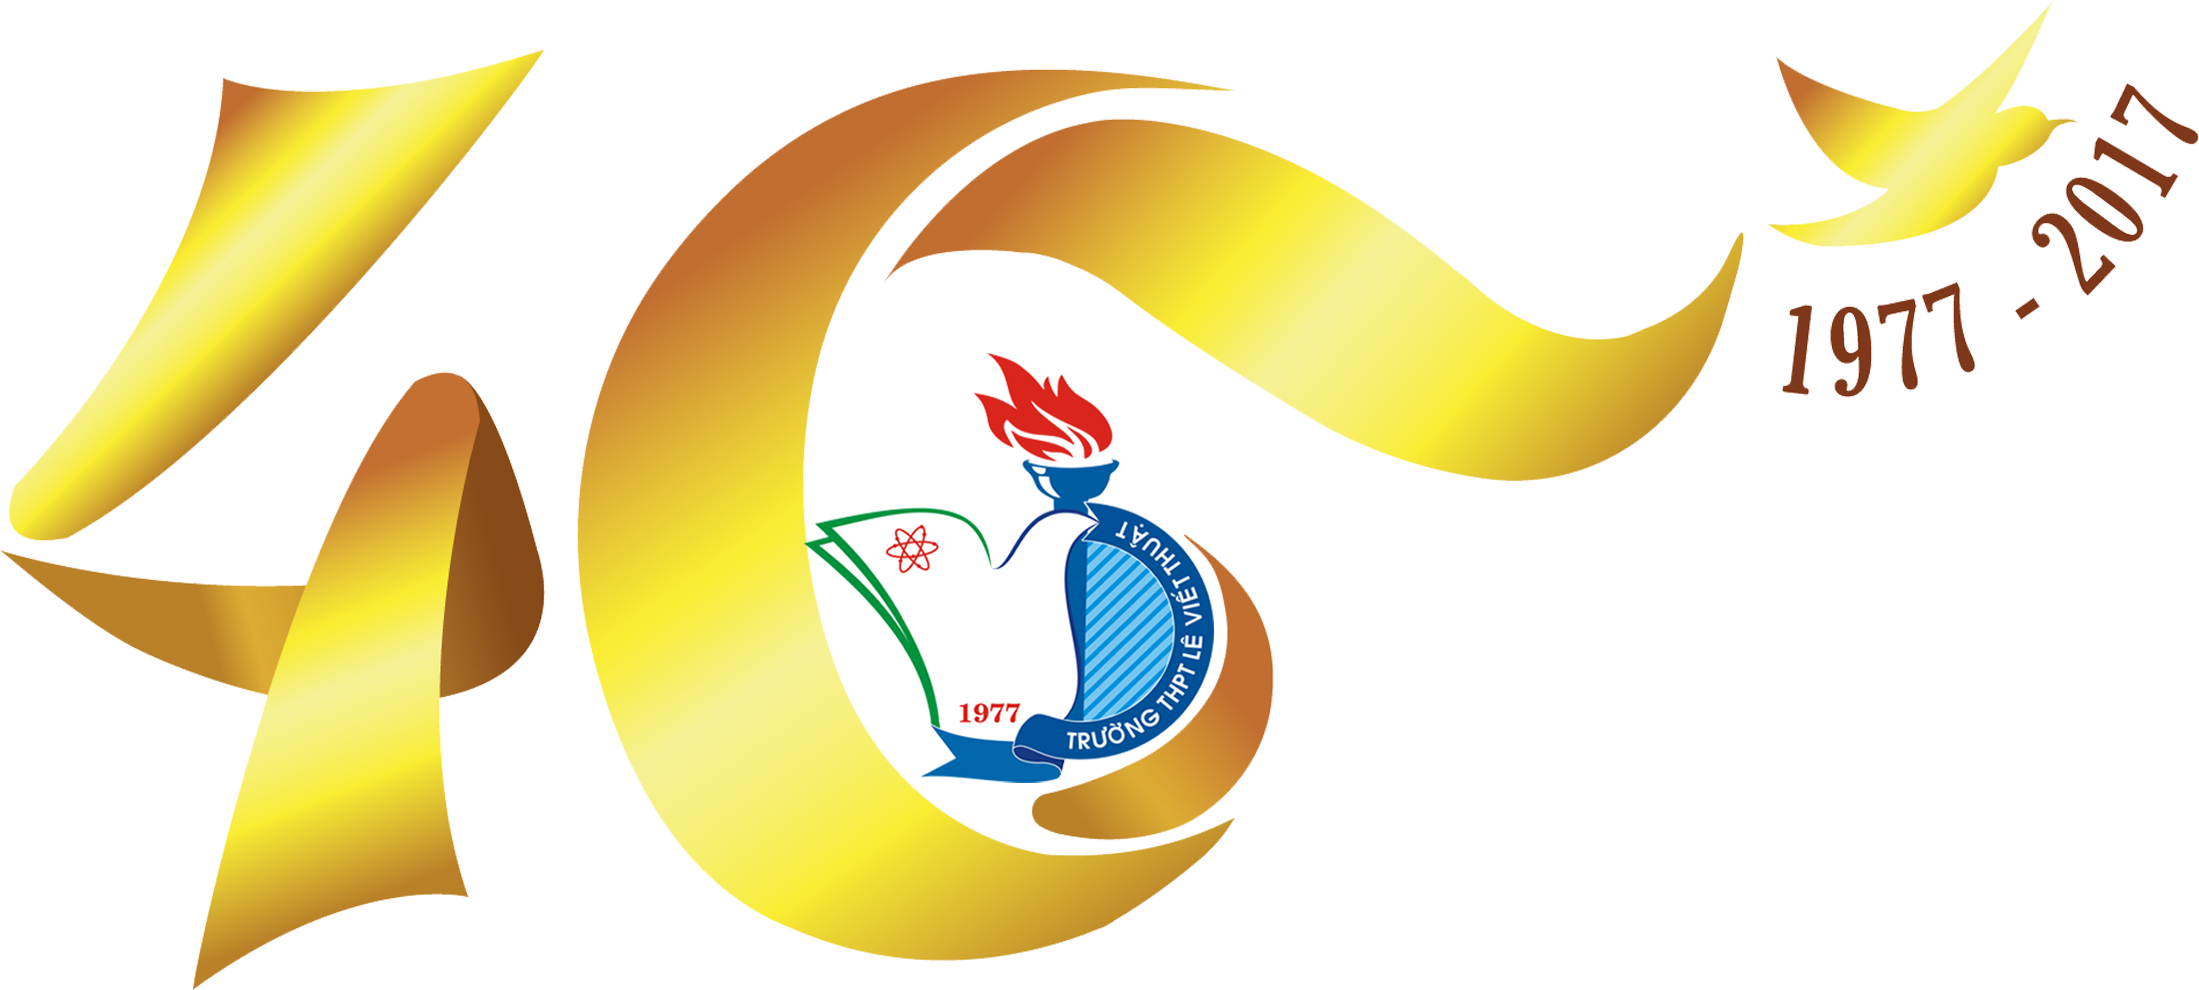 Logo chính thức chào mừng kỷ niệm 40 năm thành lập trường THPT Lê Viết Thuật (1977-2017)